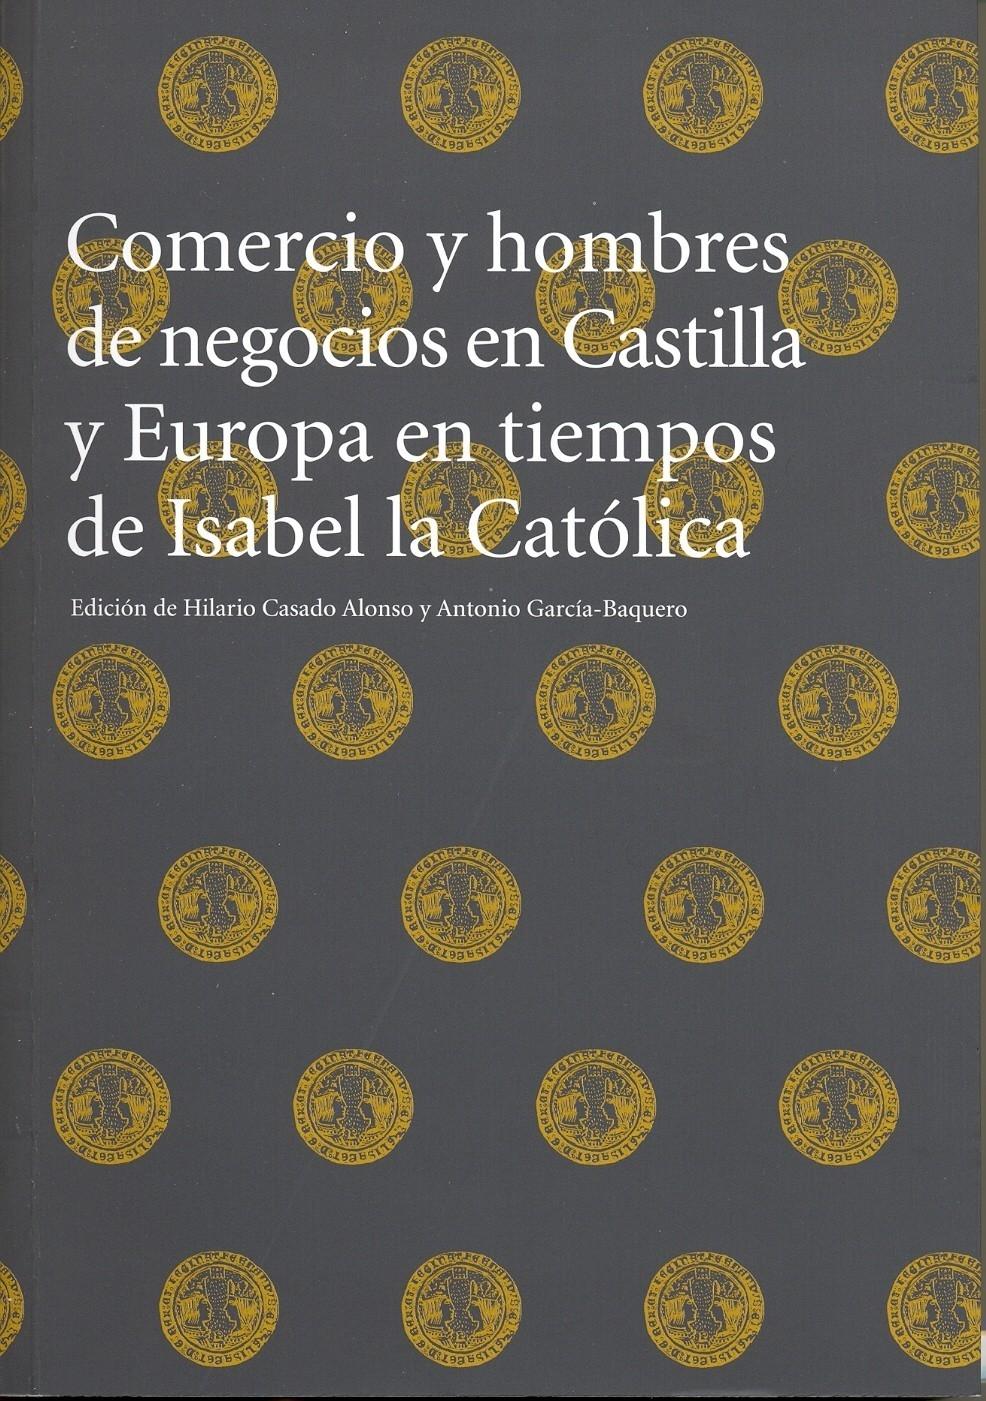 Imagen de portada del libro Comercio y hombres de negocios en Castilla y Europa en tiempos de Isabel la Católica